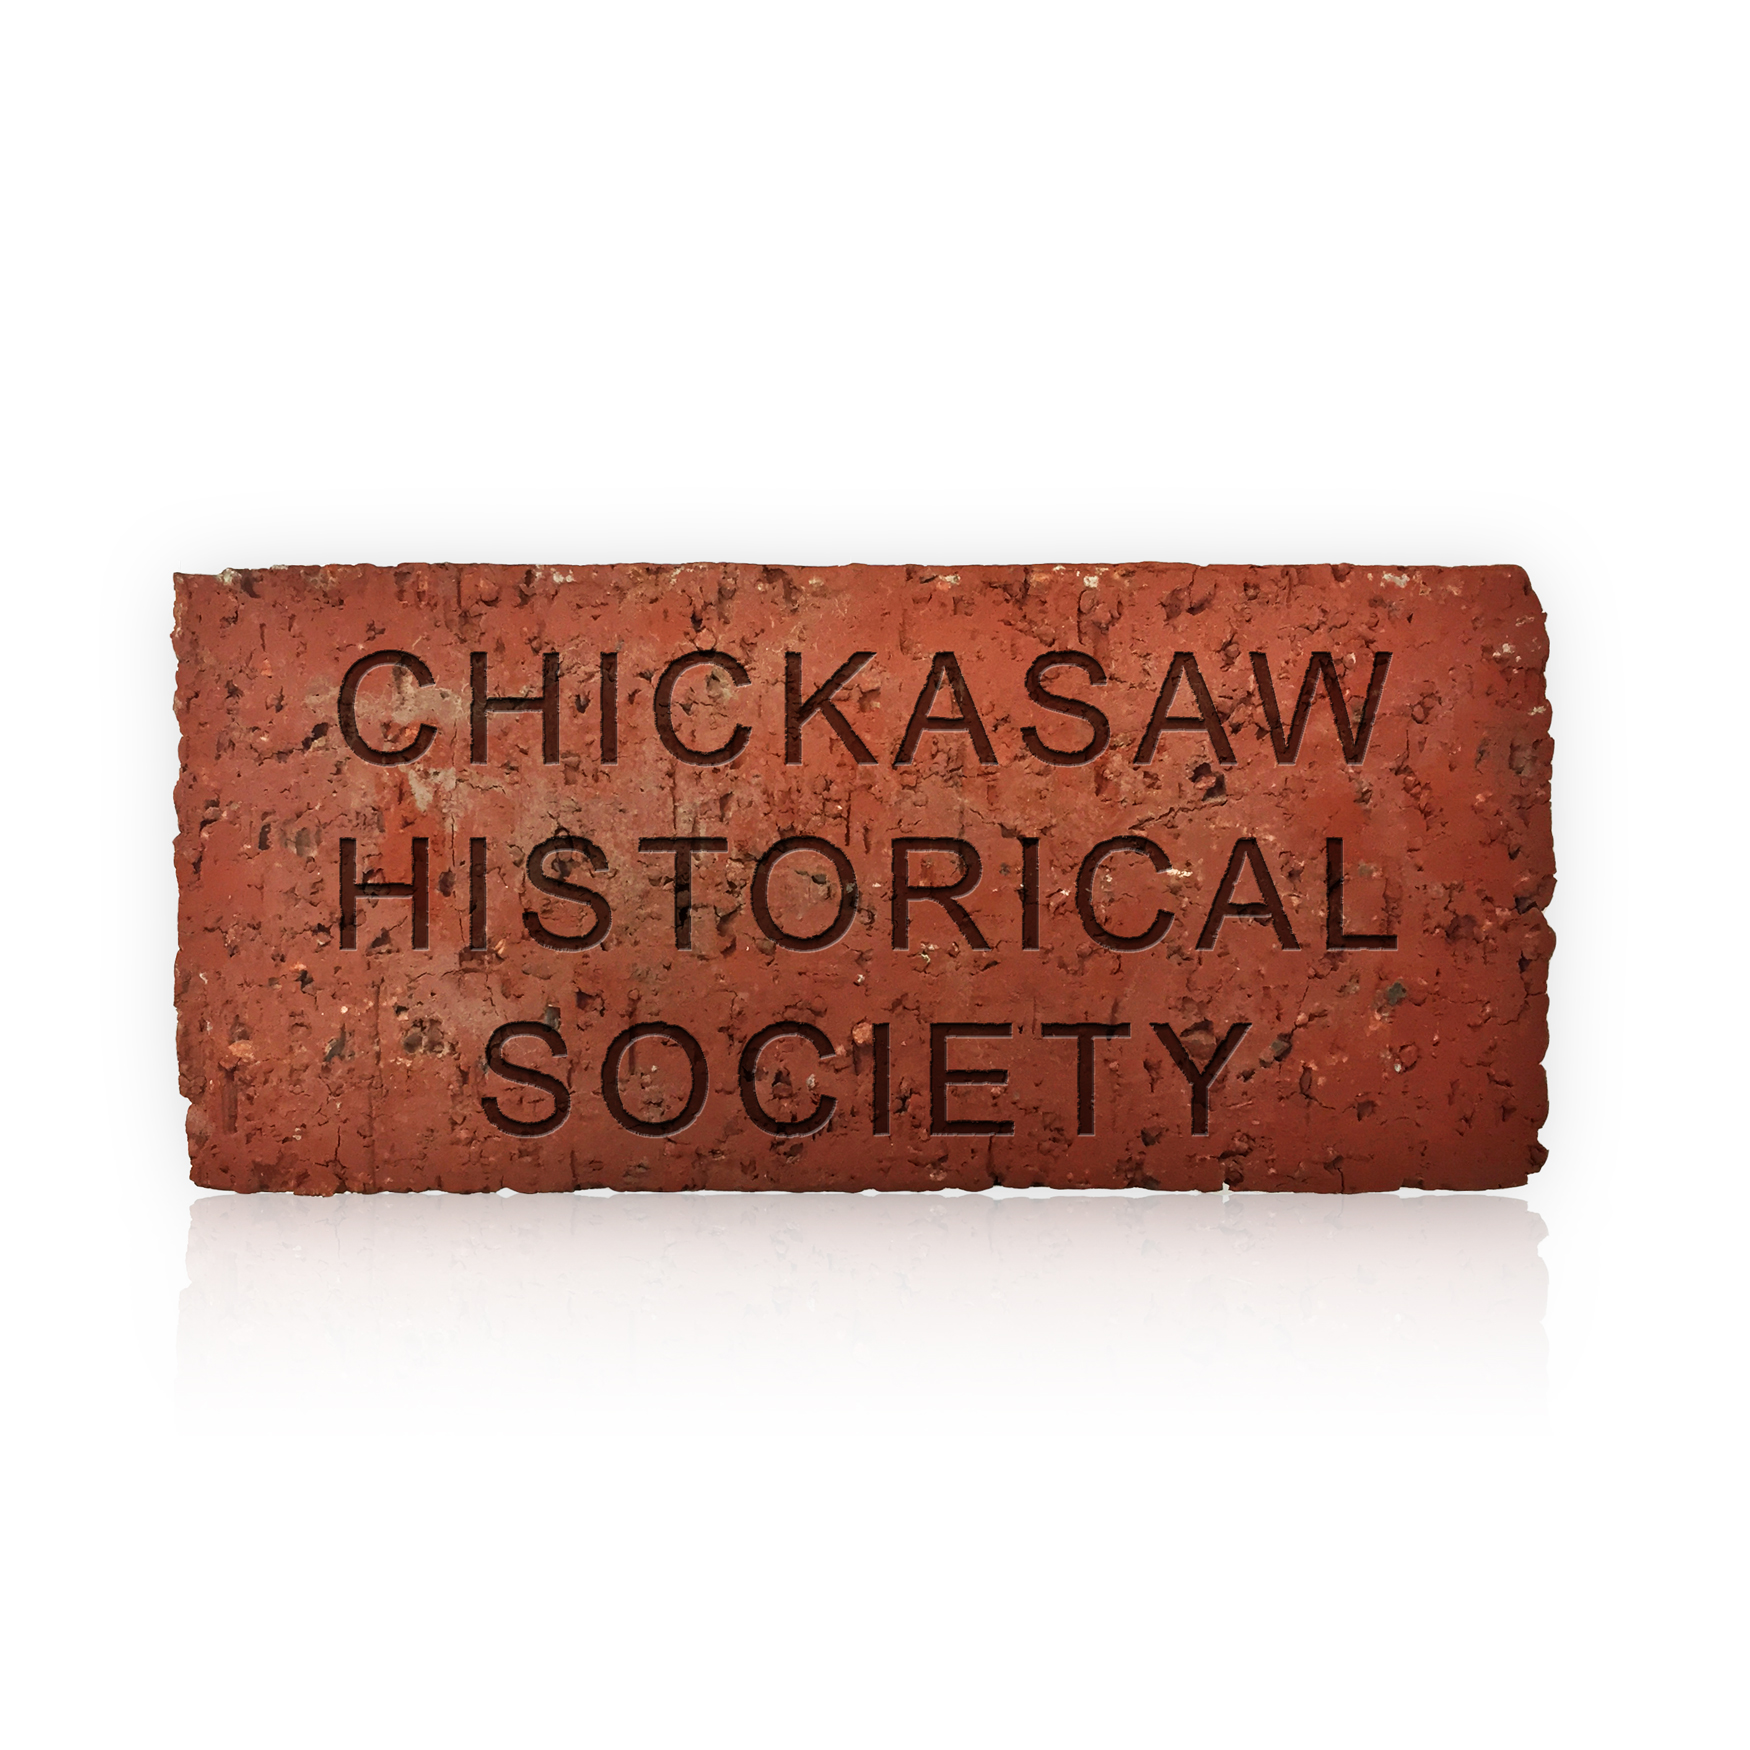 Chickasaw Historical Society Memorial Brick